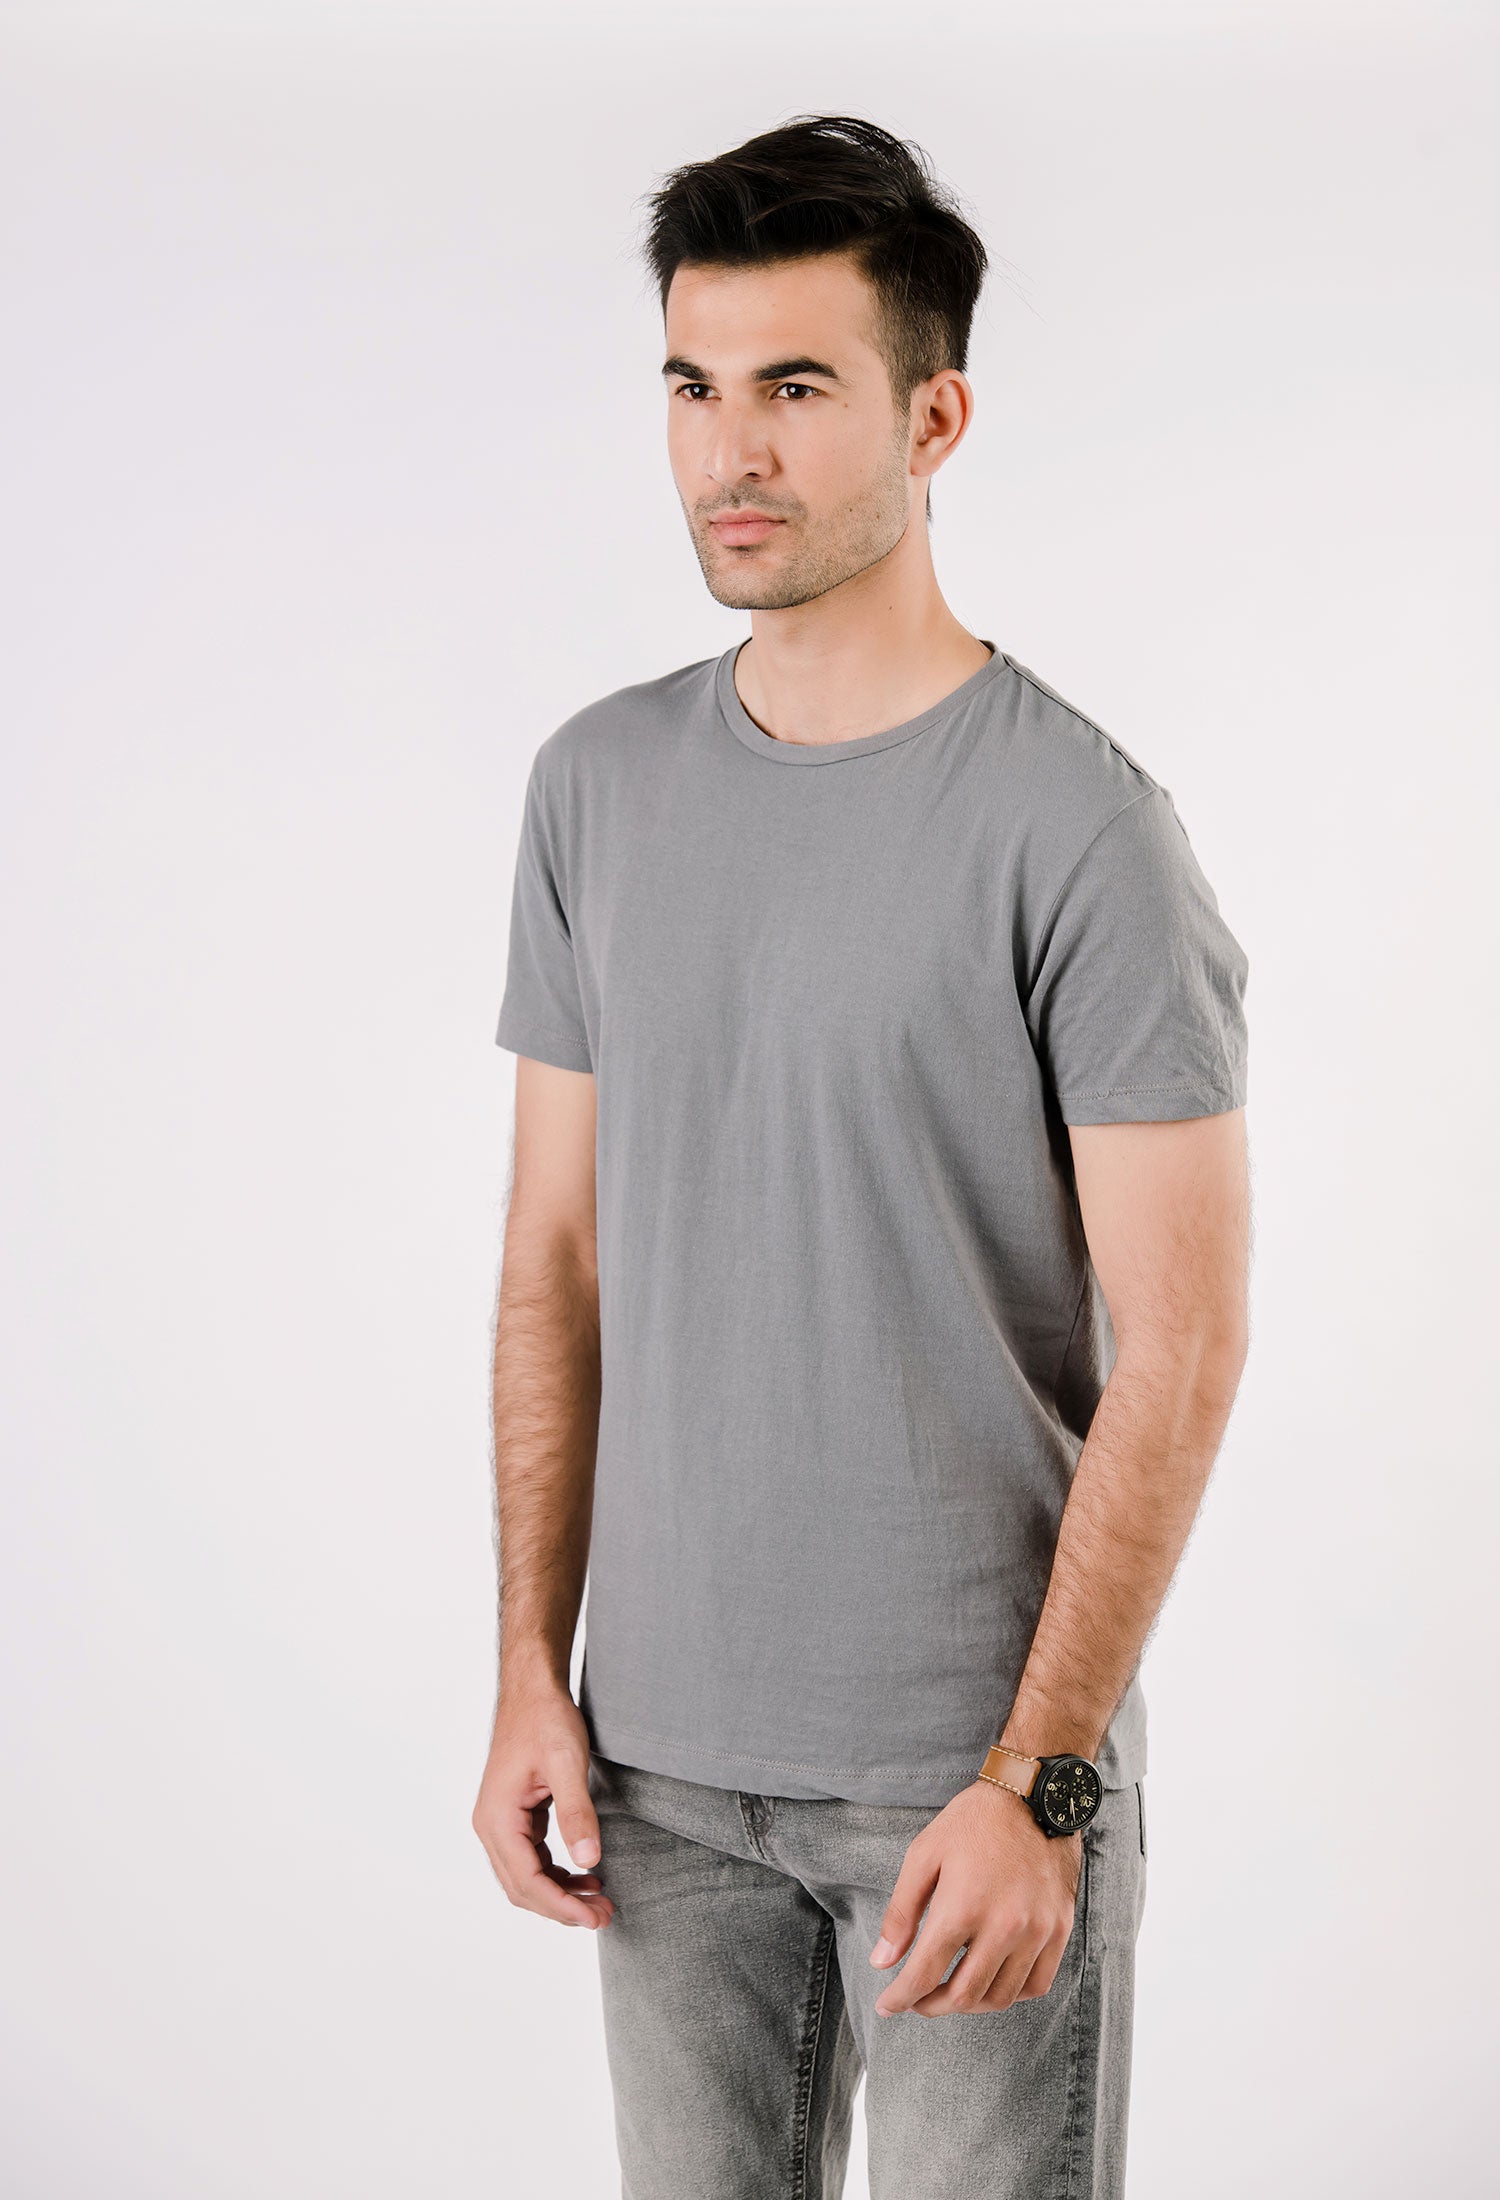 Grey Basic T-Shirt (T-SHB-0001)